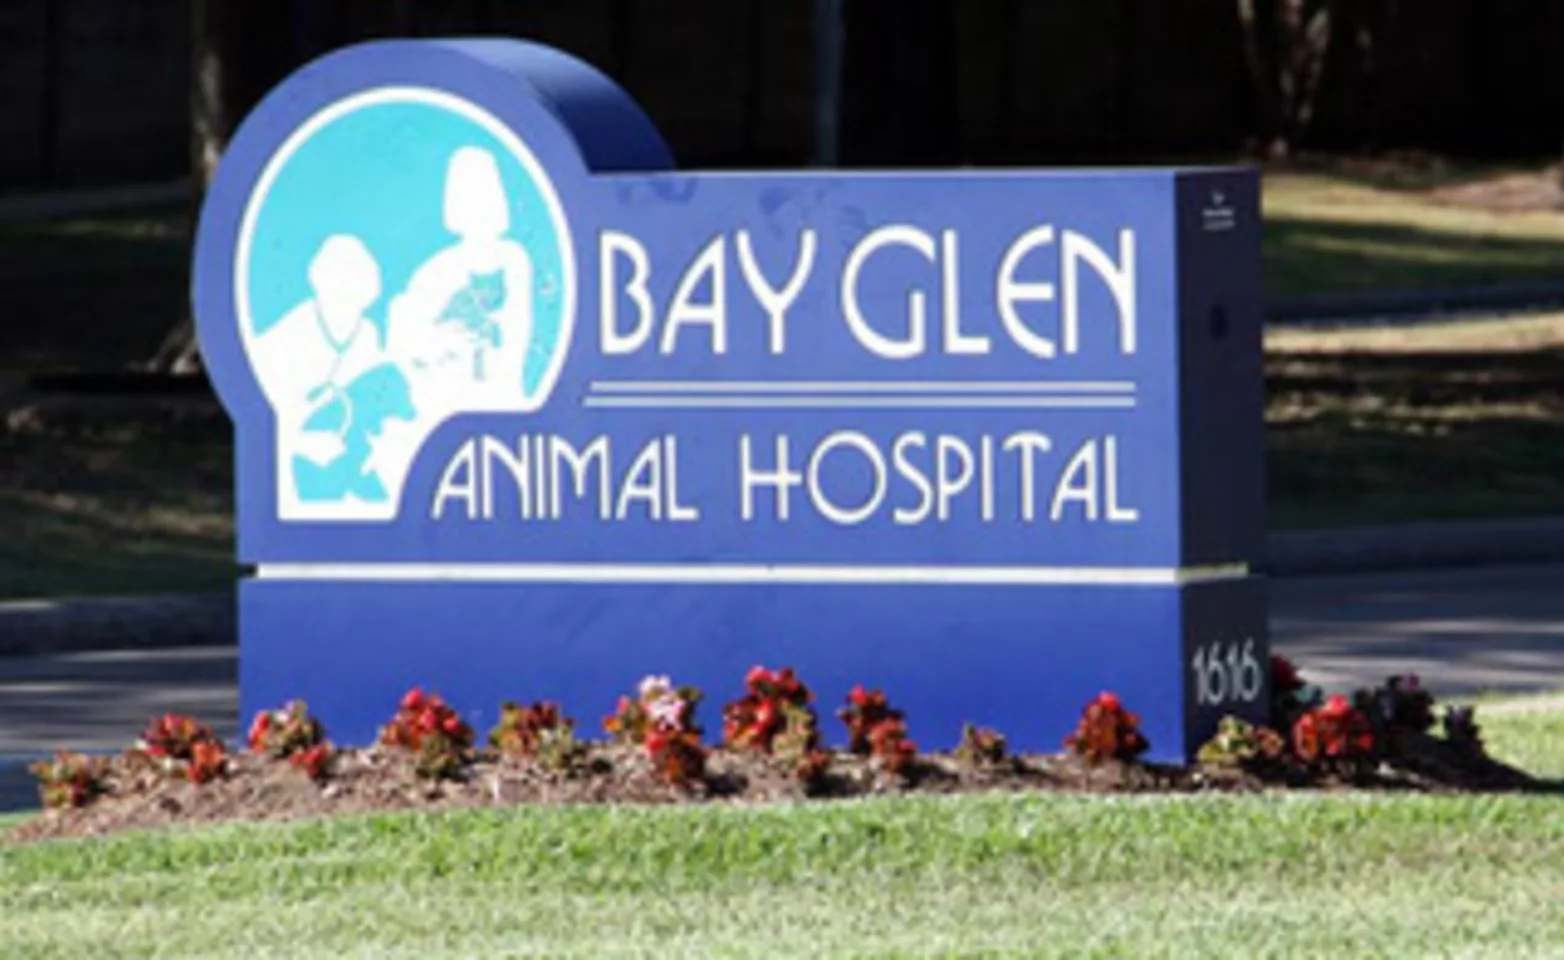 Bay Glen Animal Hospital Front Sign